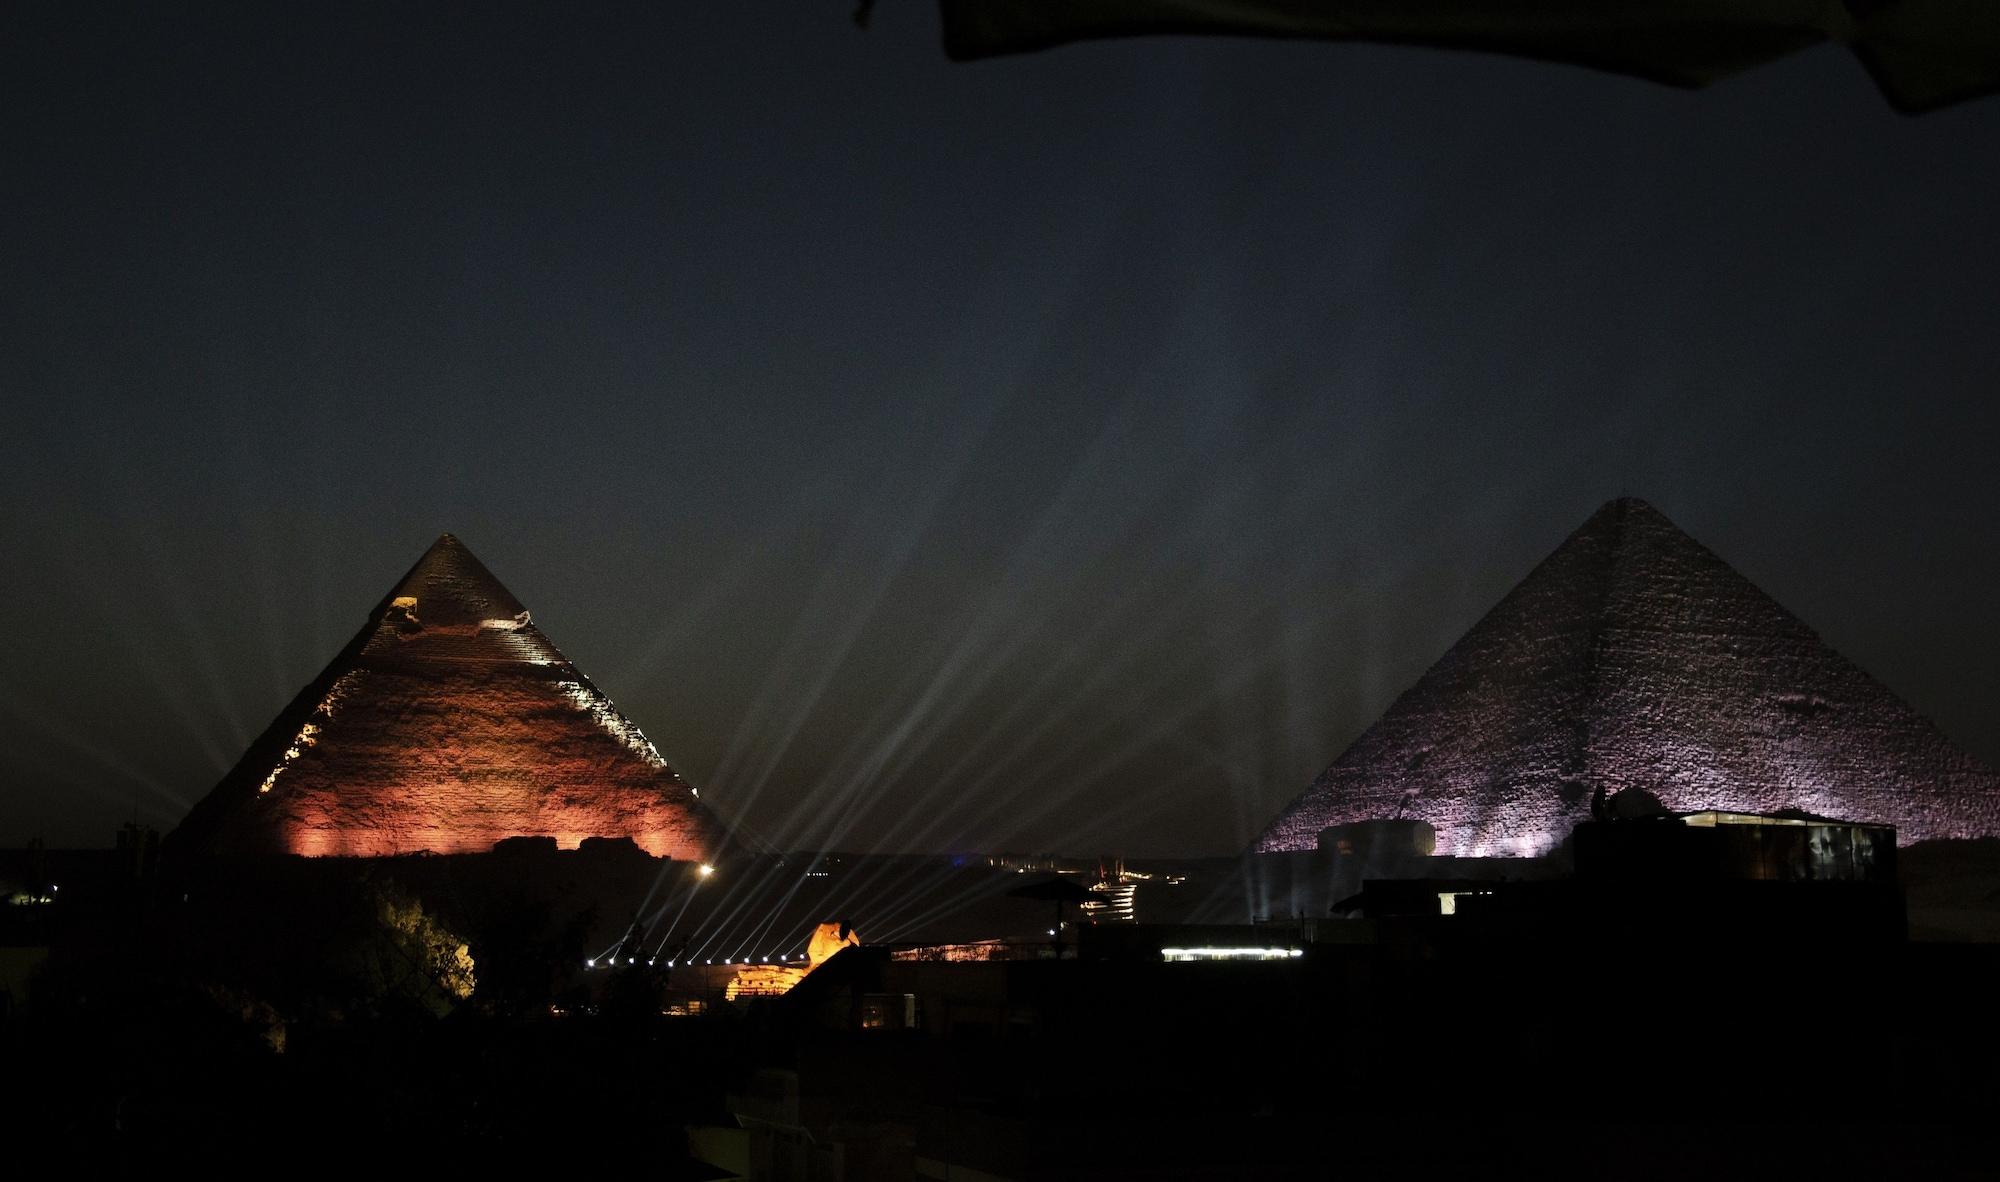 Makadi Pyramids View